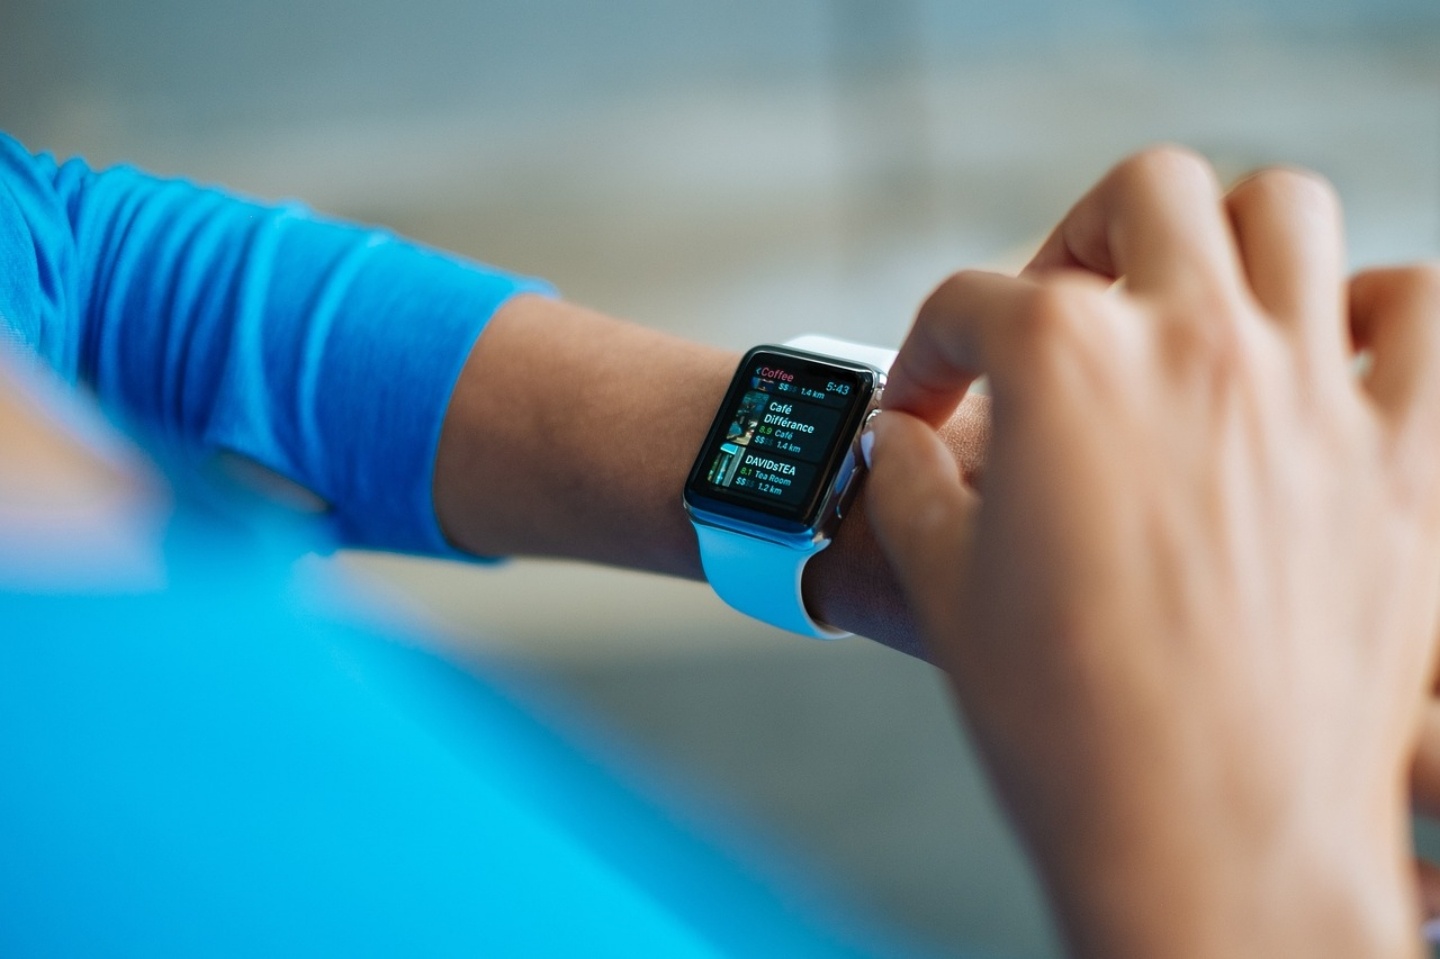 第六代 Apple Watch 功能曝光？搭載 watchOS 7 並可能新增血氧檢測、睡眠監測功能